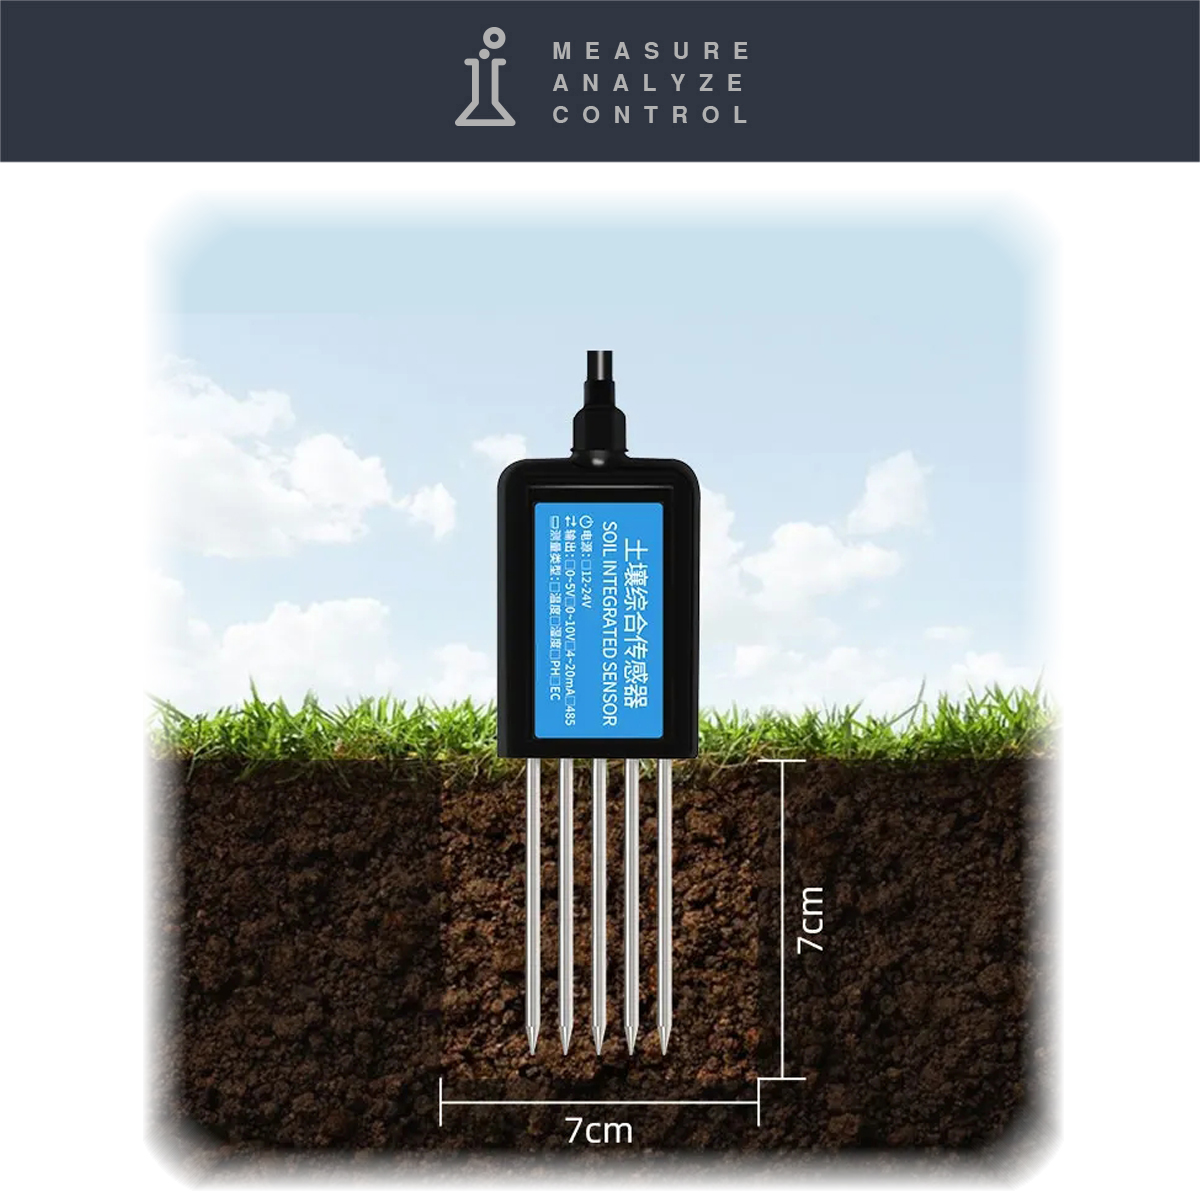 Soil Sensor